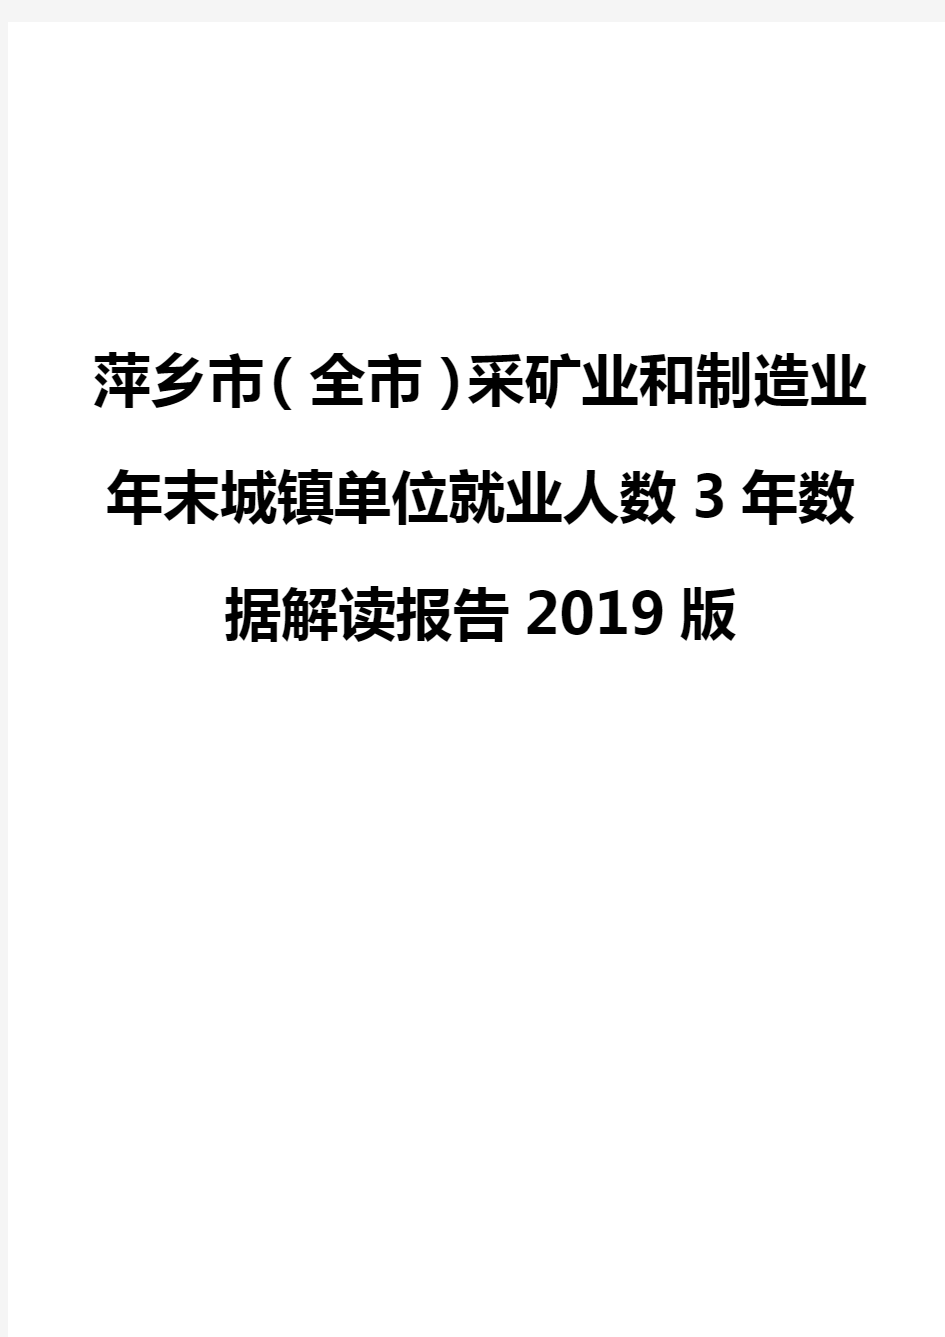 萍乡市(全市)采矿业和制造业年末城镇单位就业人数3年数据解读报告2019版